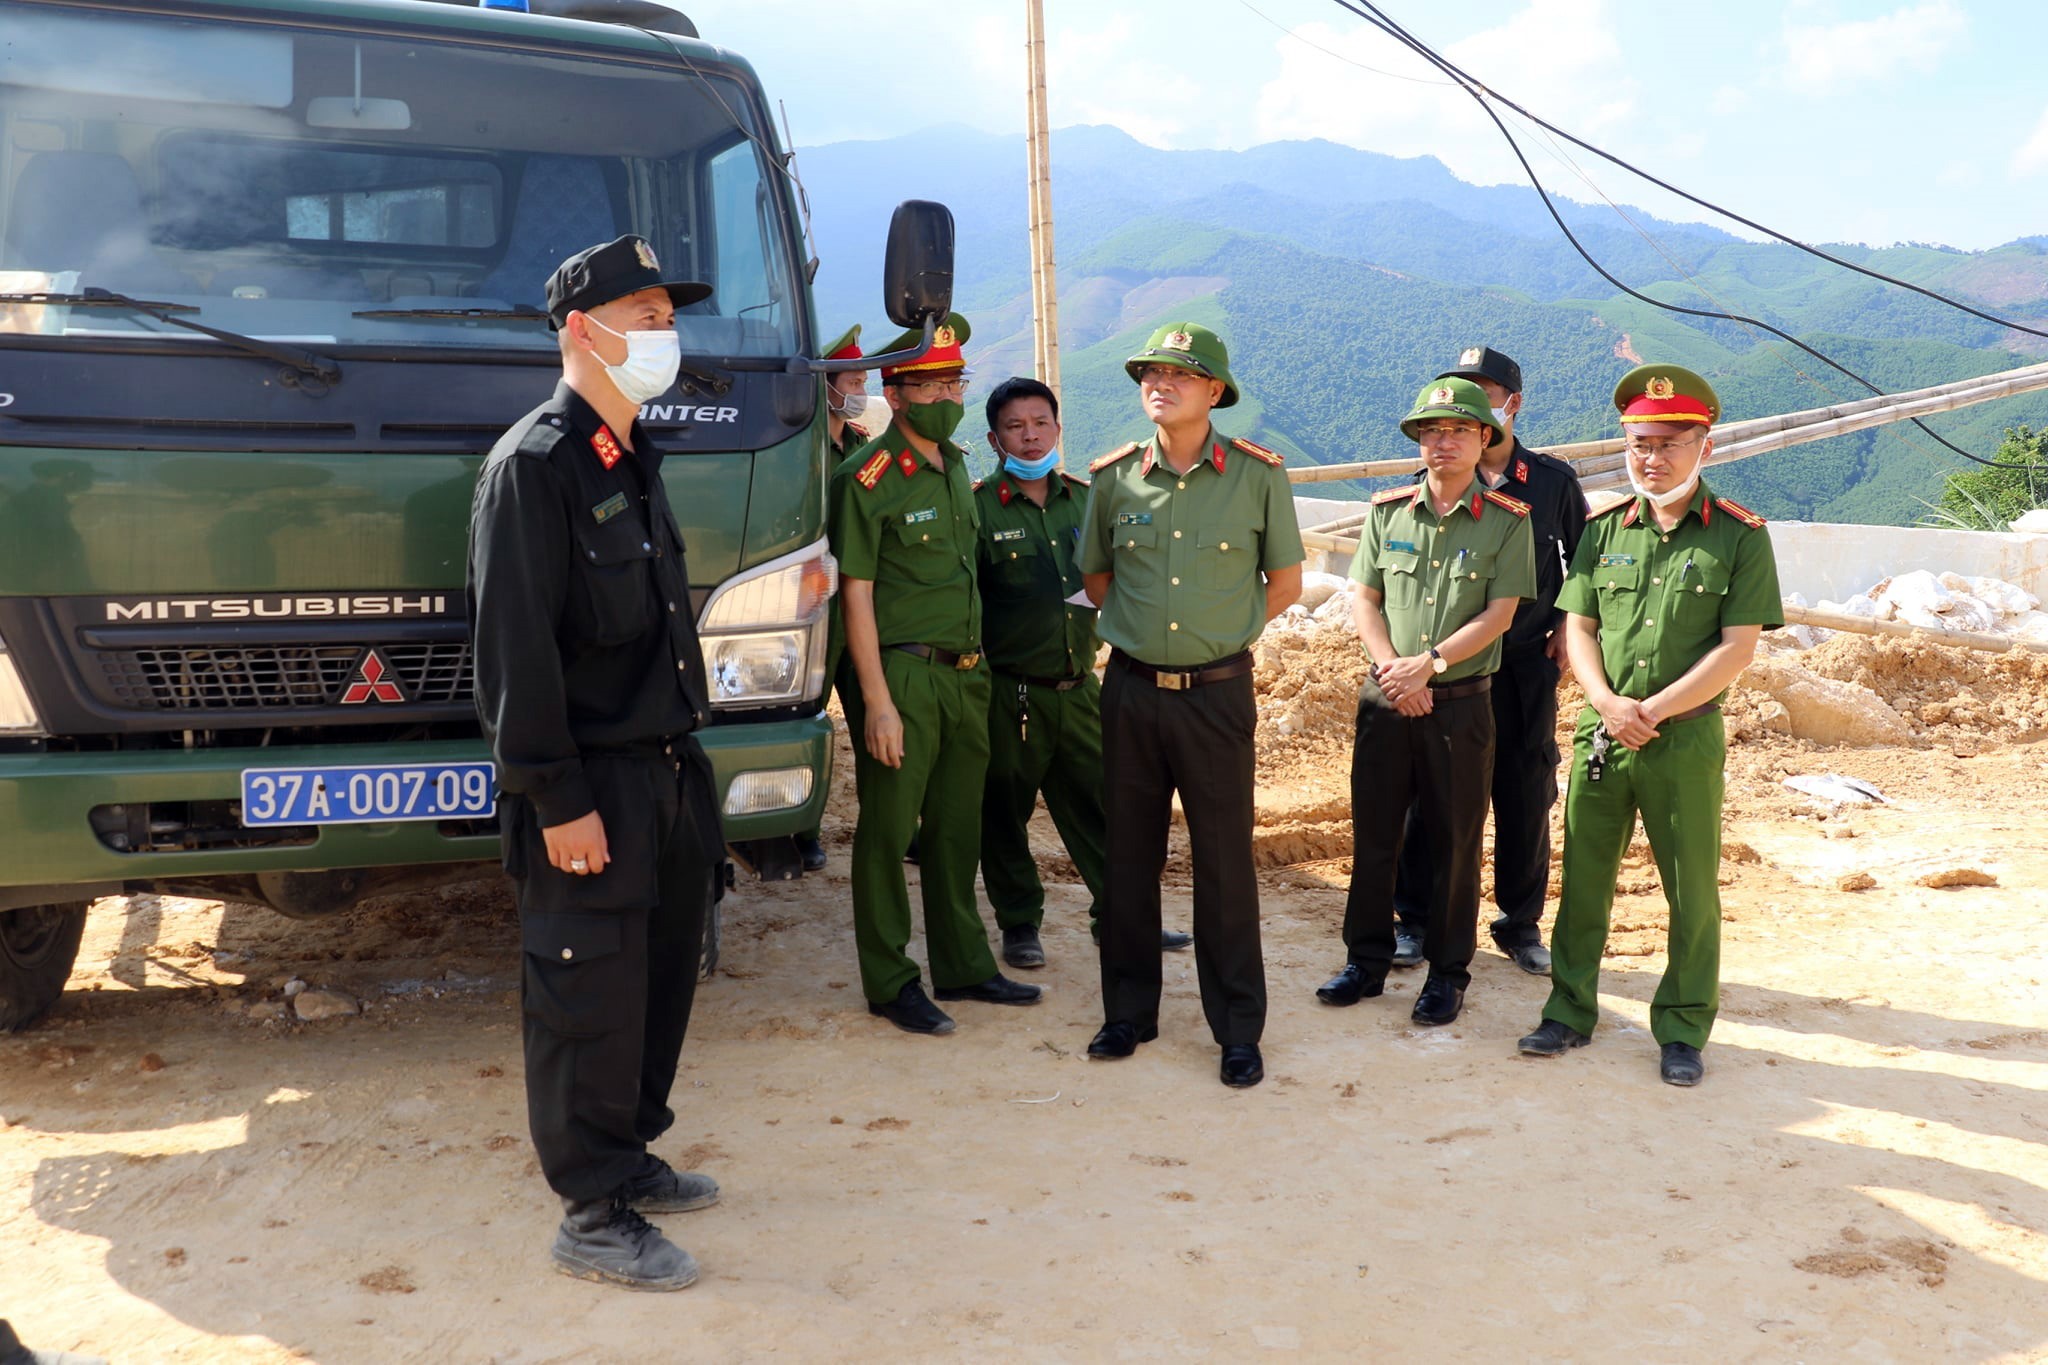 An ninh - Hình sự - Hé lộ về 'đại gia' bị khởi tố vì khai thác hơn 1.000m³ khối đá trái phép ở Nghệ An